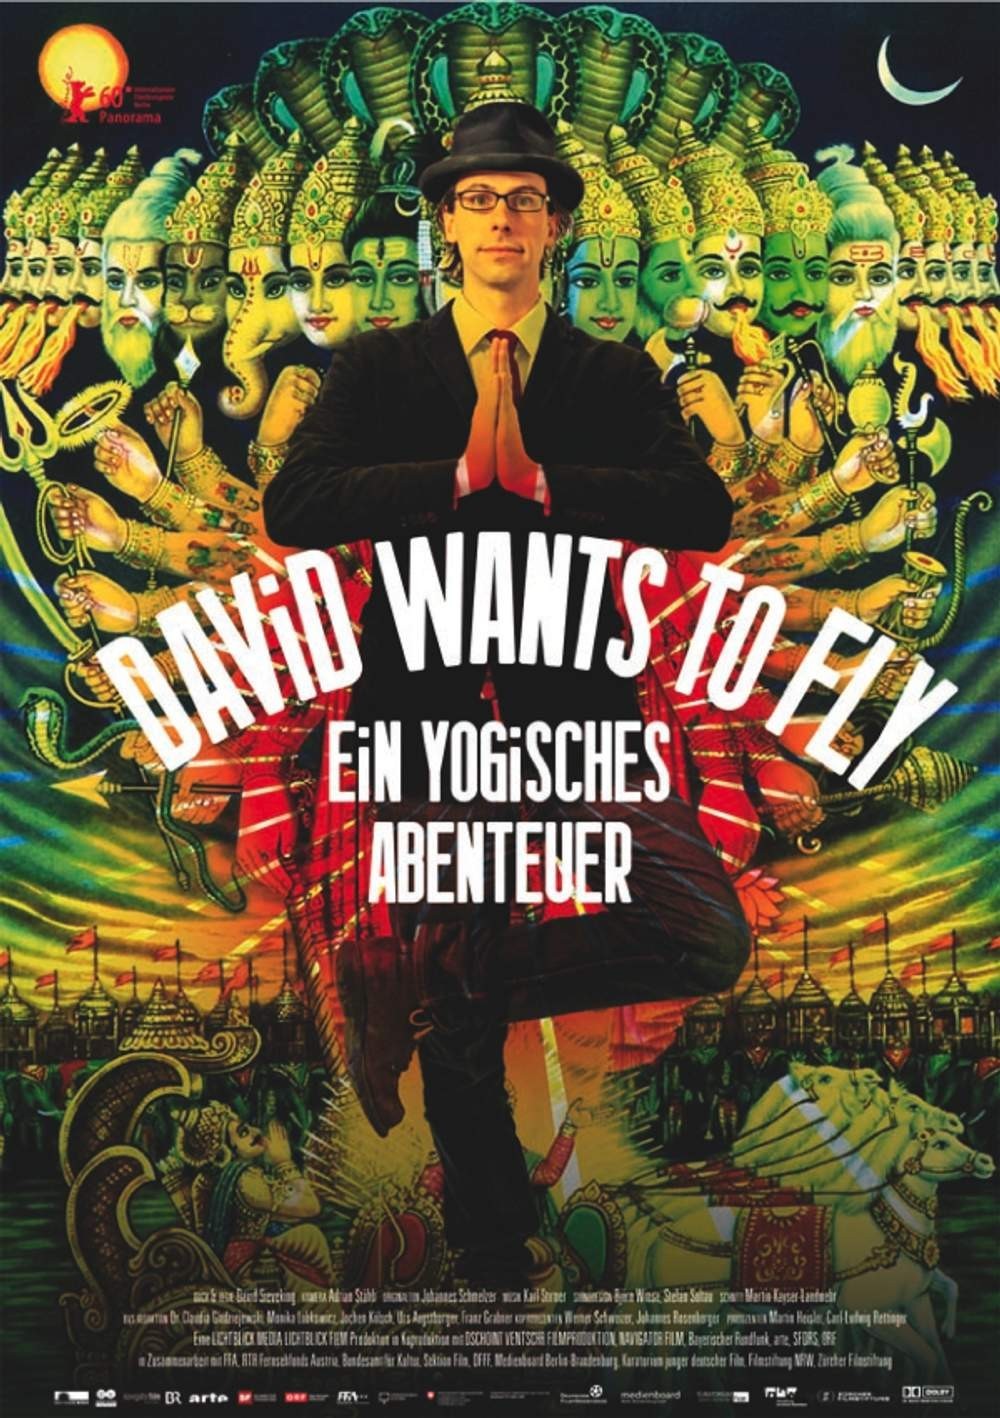 Plakat von "David Wants to Fly - Ein yogisches Abenteuer"